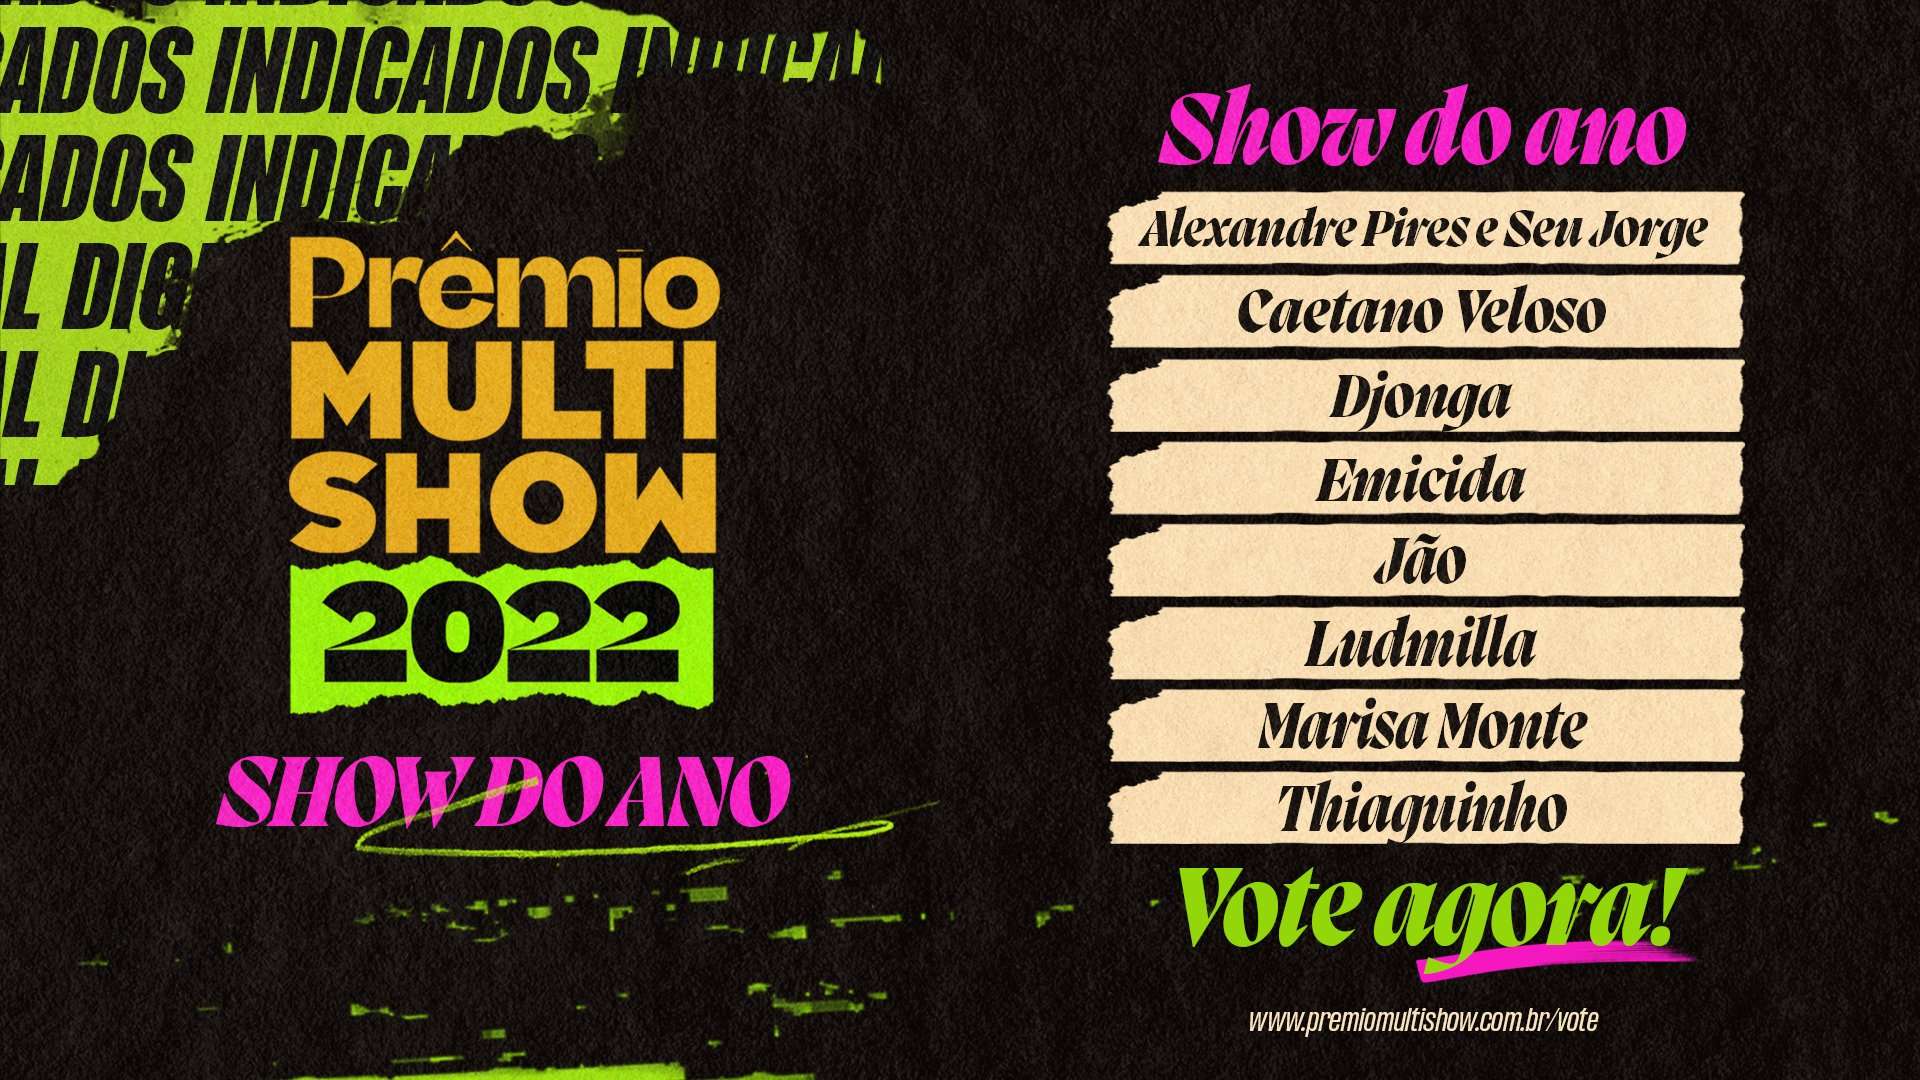 Show do Ano - Prêmio Multishow 2022